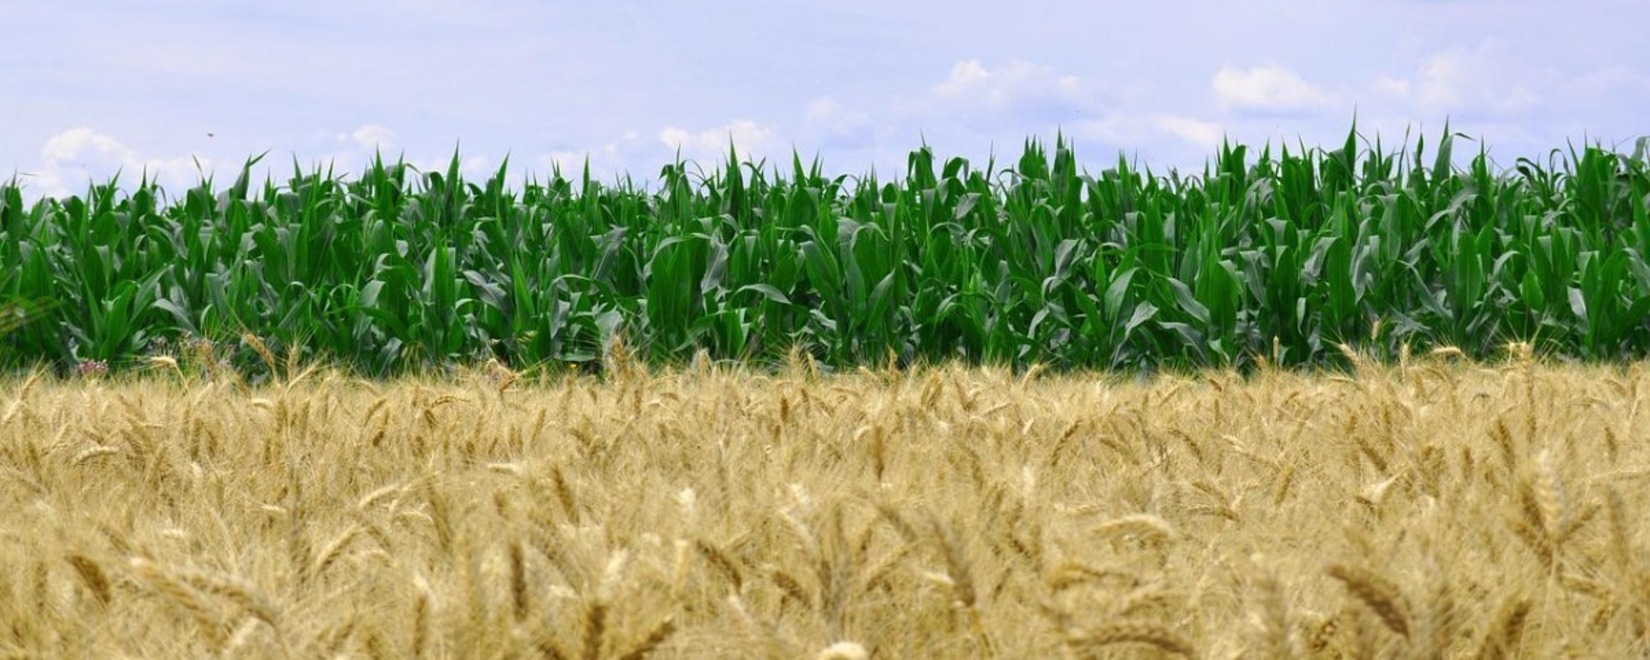 生产地区的干旱降低了欧盟谷物和油籽作物的潜力